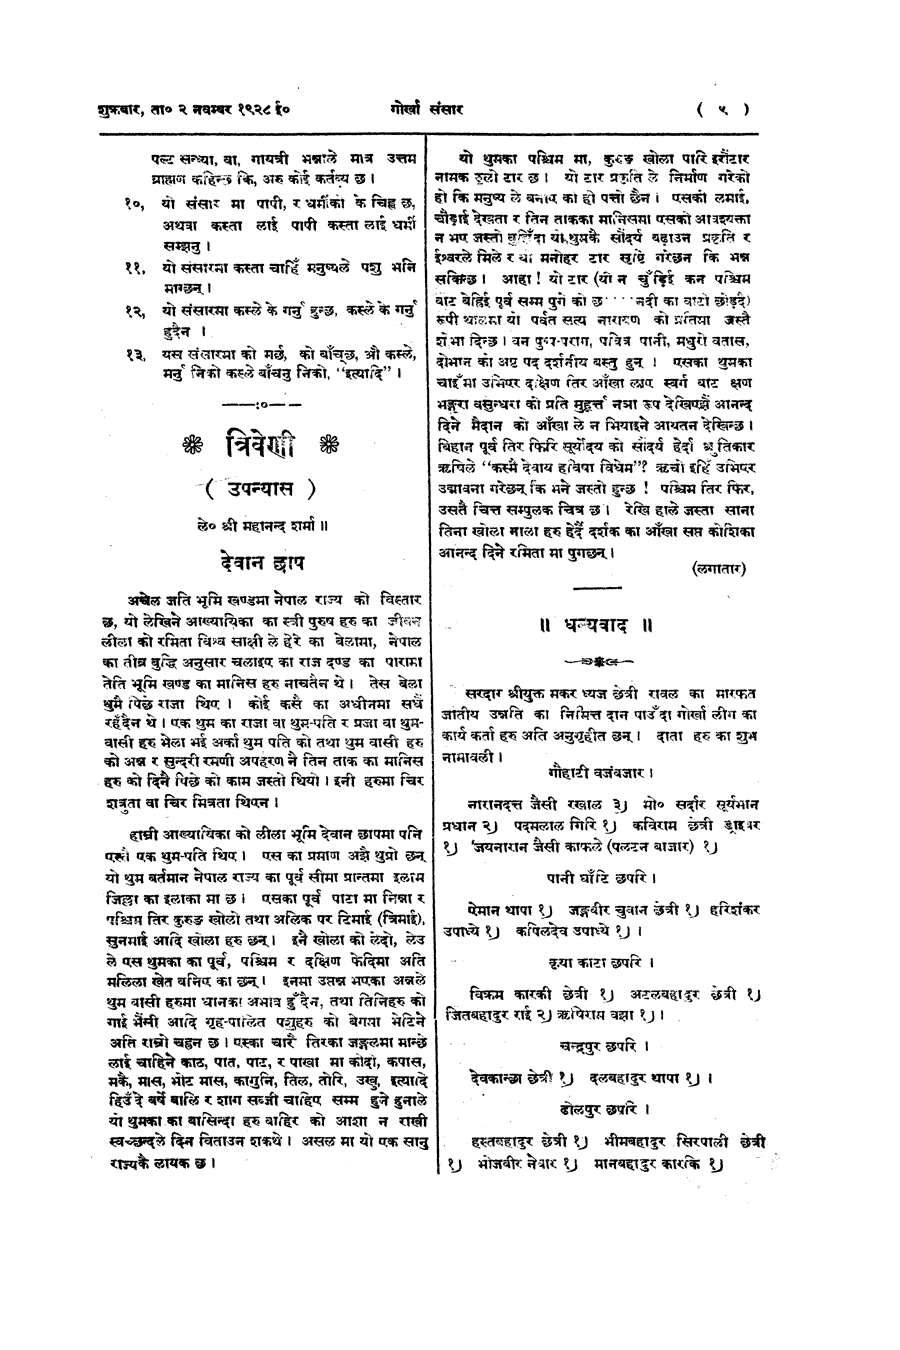 Gorkha Sansar, 2 Nov 1928, page 9